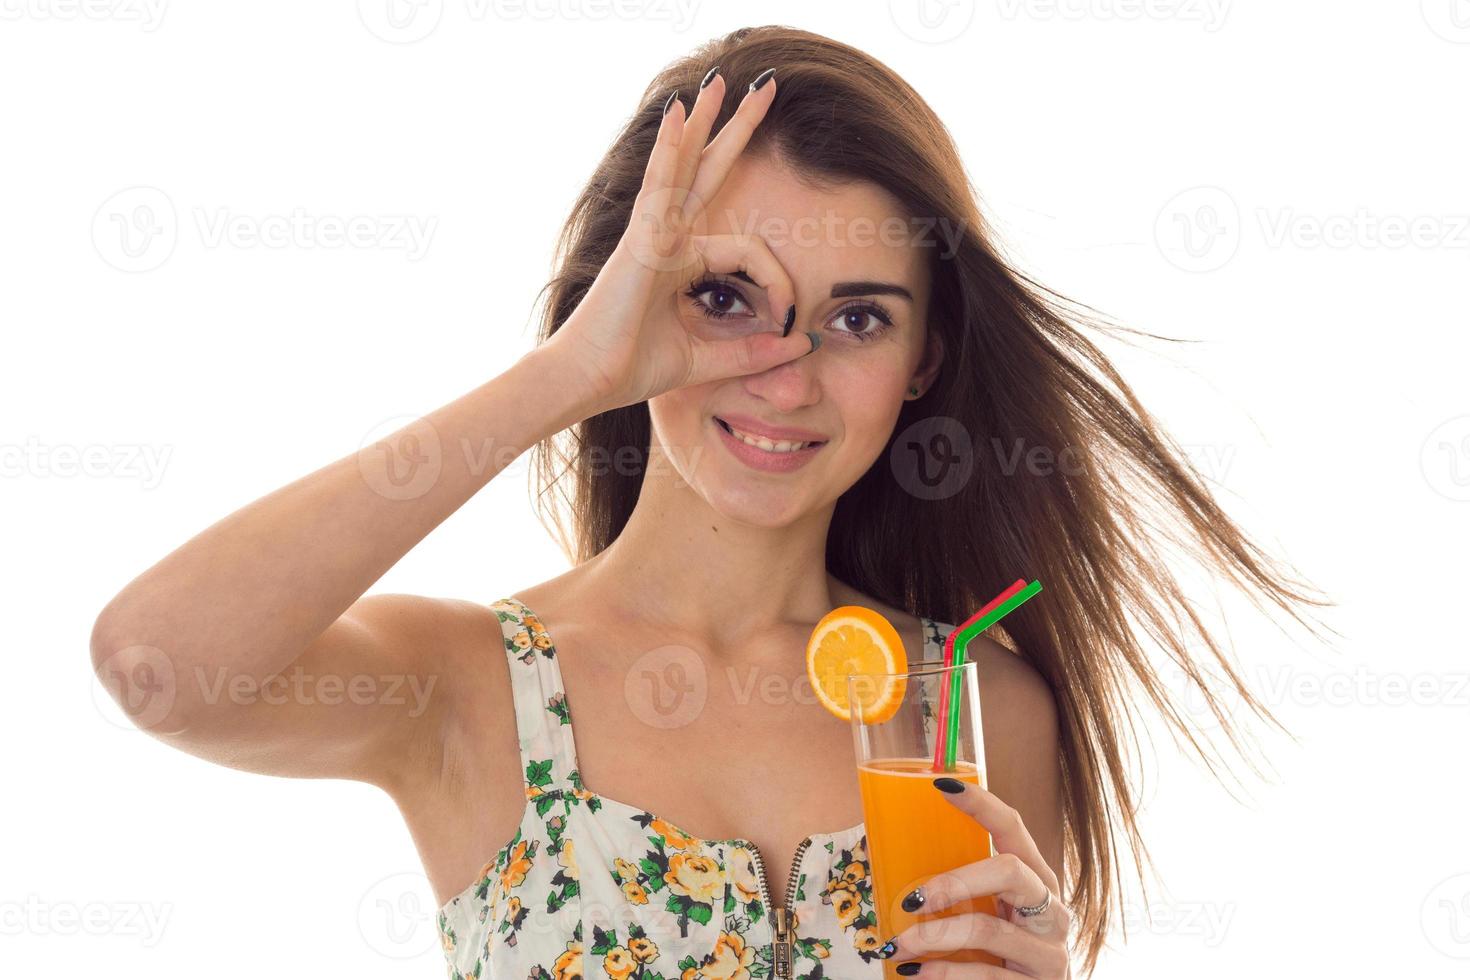 charmante jeune fille brune en vêtements d'été avec motif floral shoing ok et boit un cocktail orange isolé sur fond blanc photo